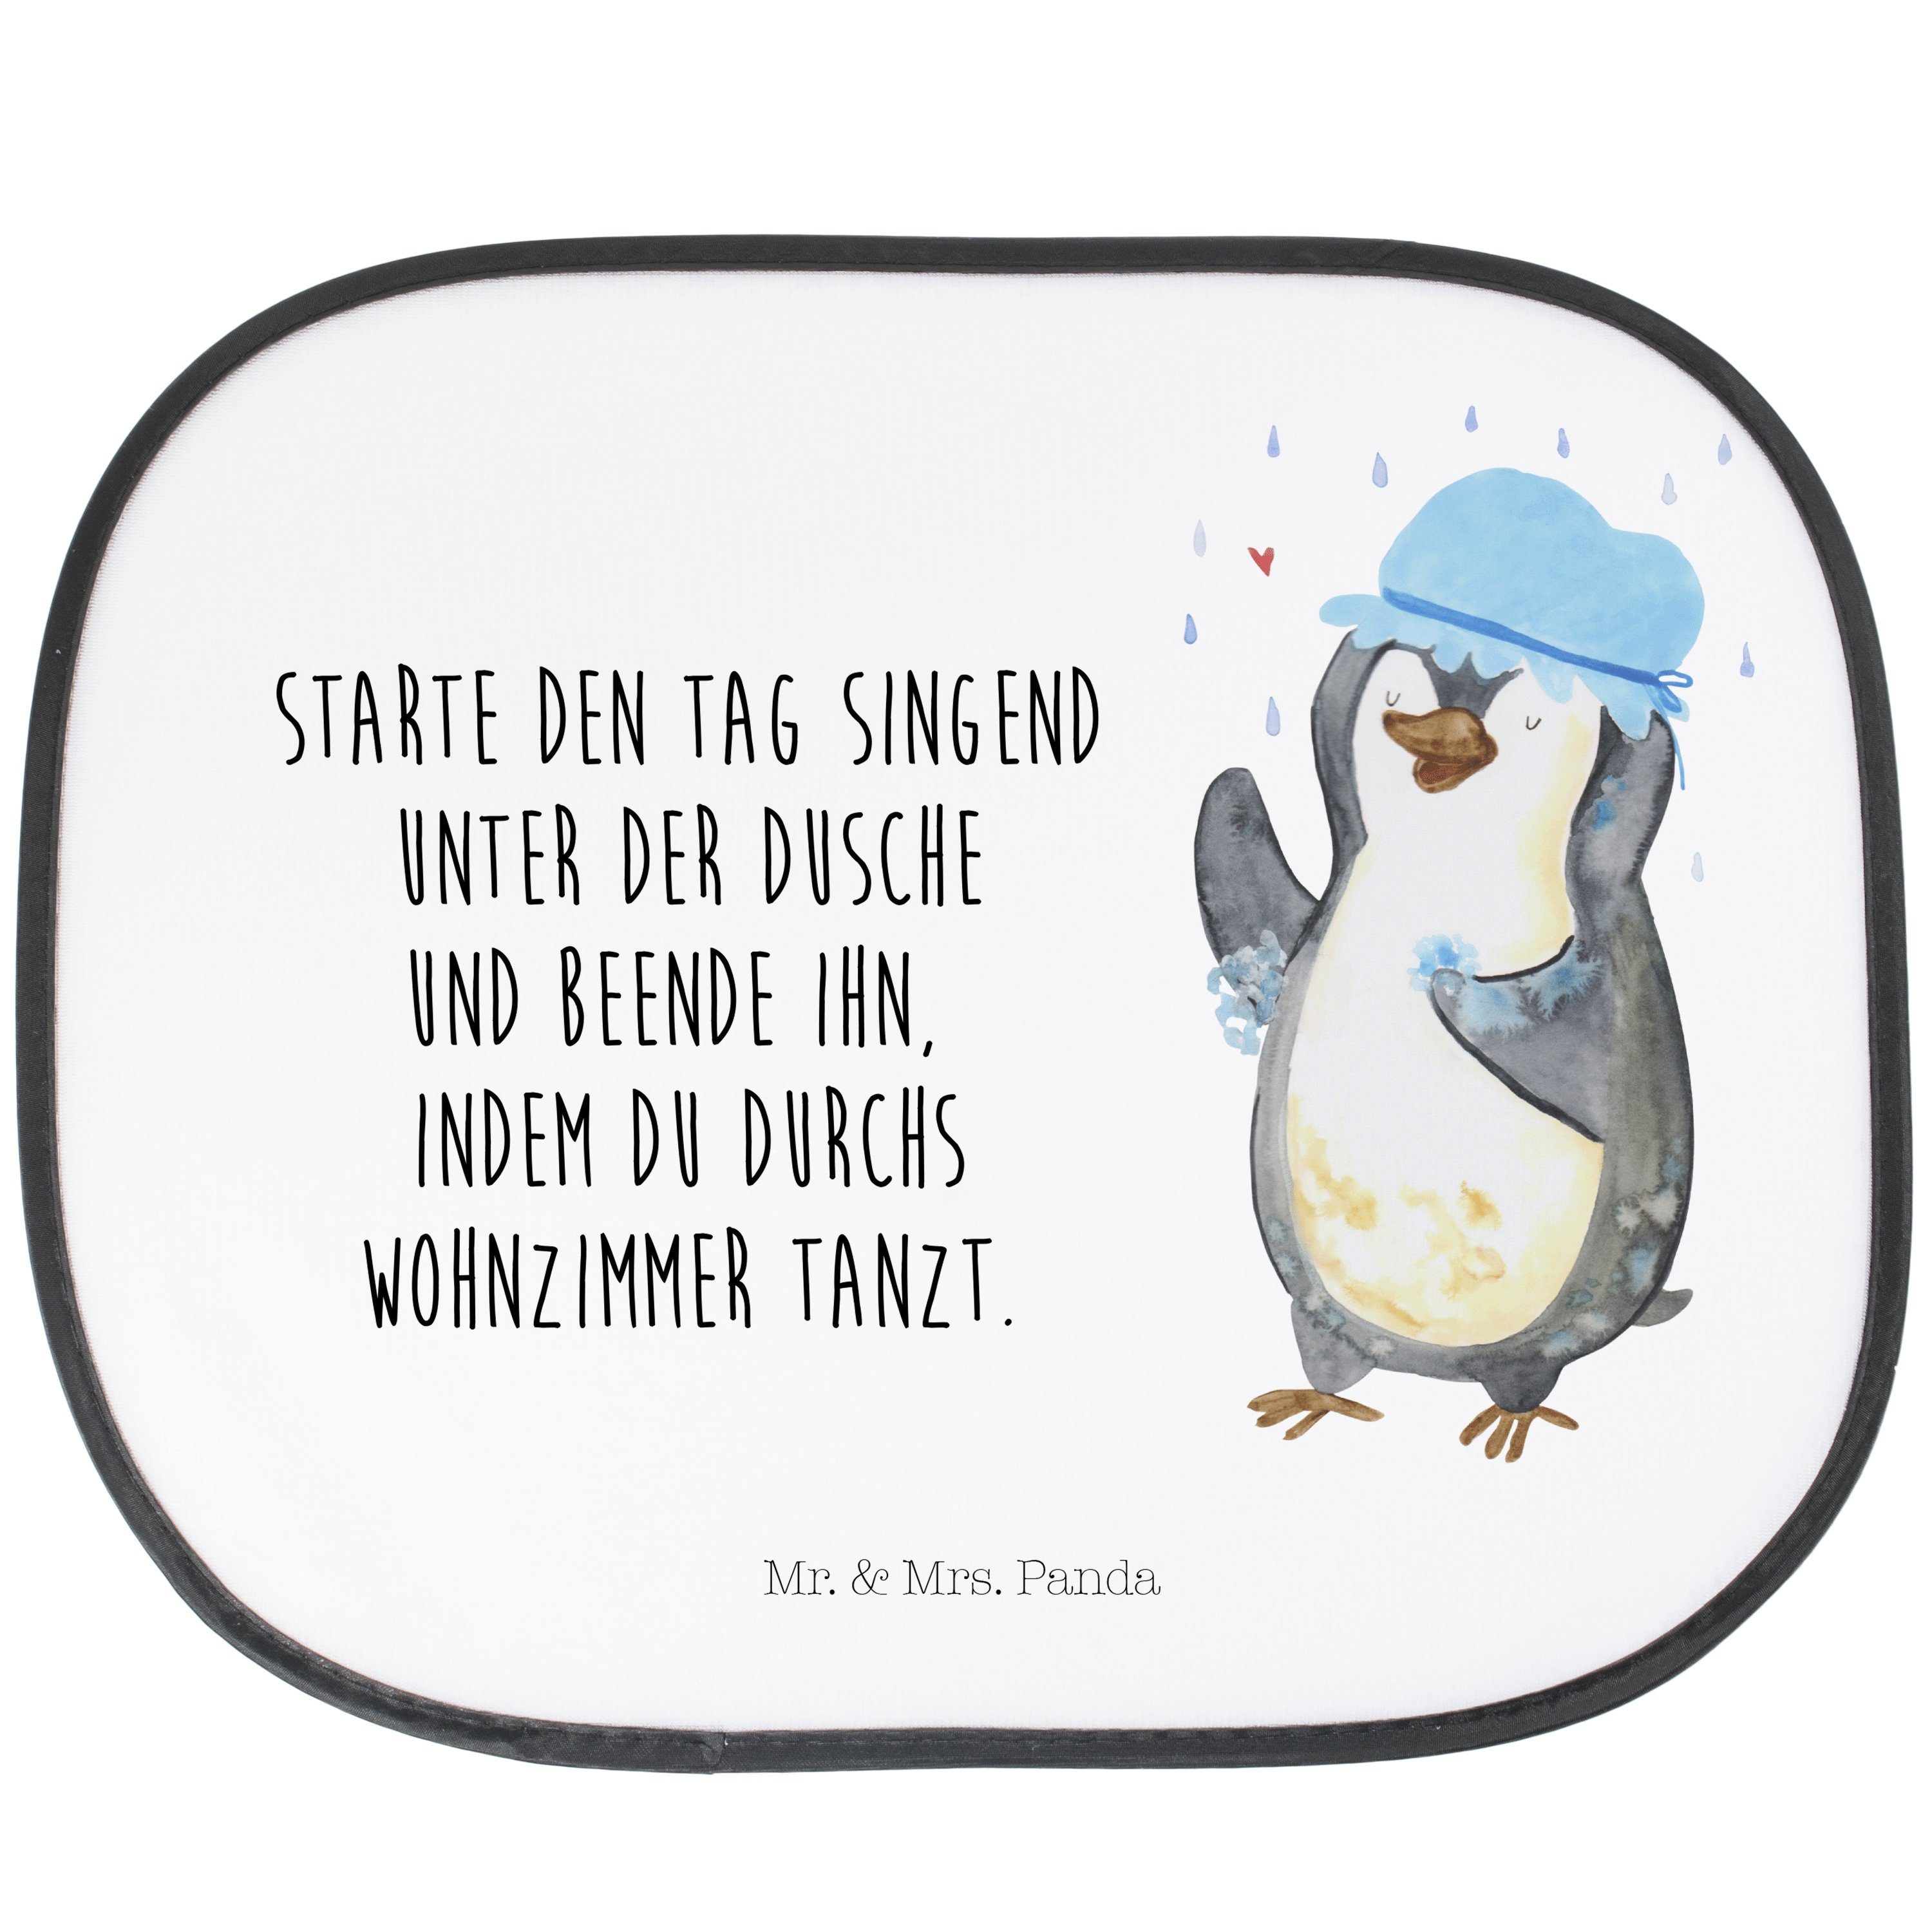 Sonnenschutz Pinguin duscht - Weiß - Geschenk, Neustart, Auto Sonnenschutz, Sonnen, Mr. & Mrs. Panda, Seidenmatt